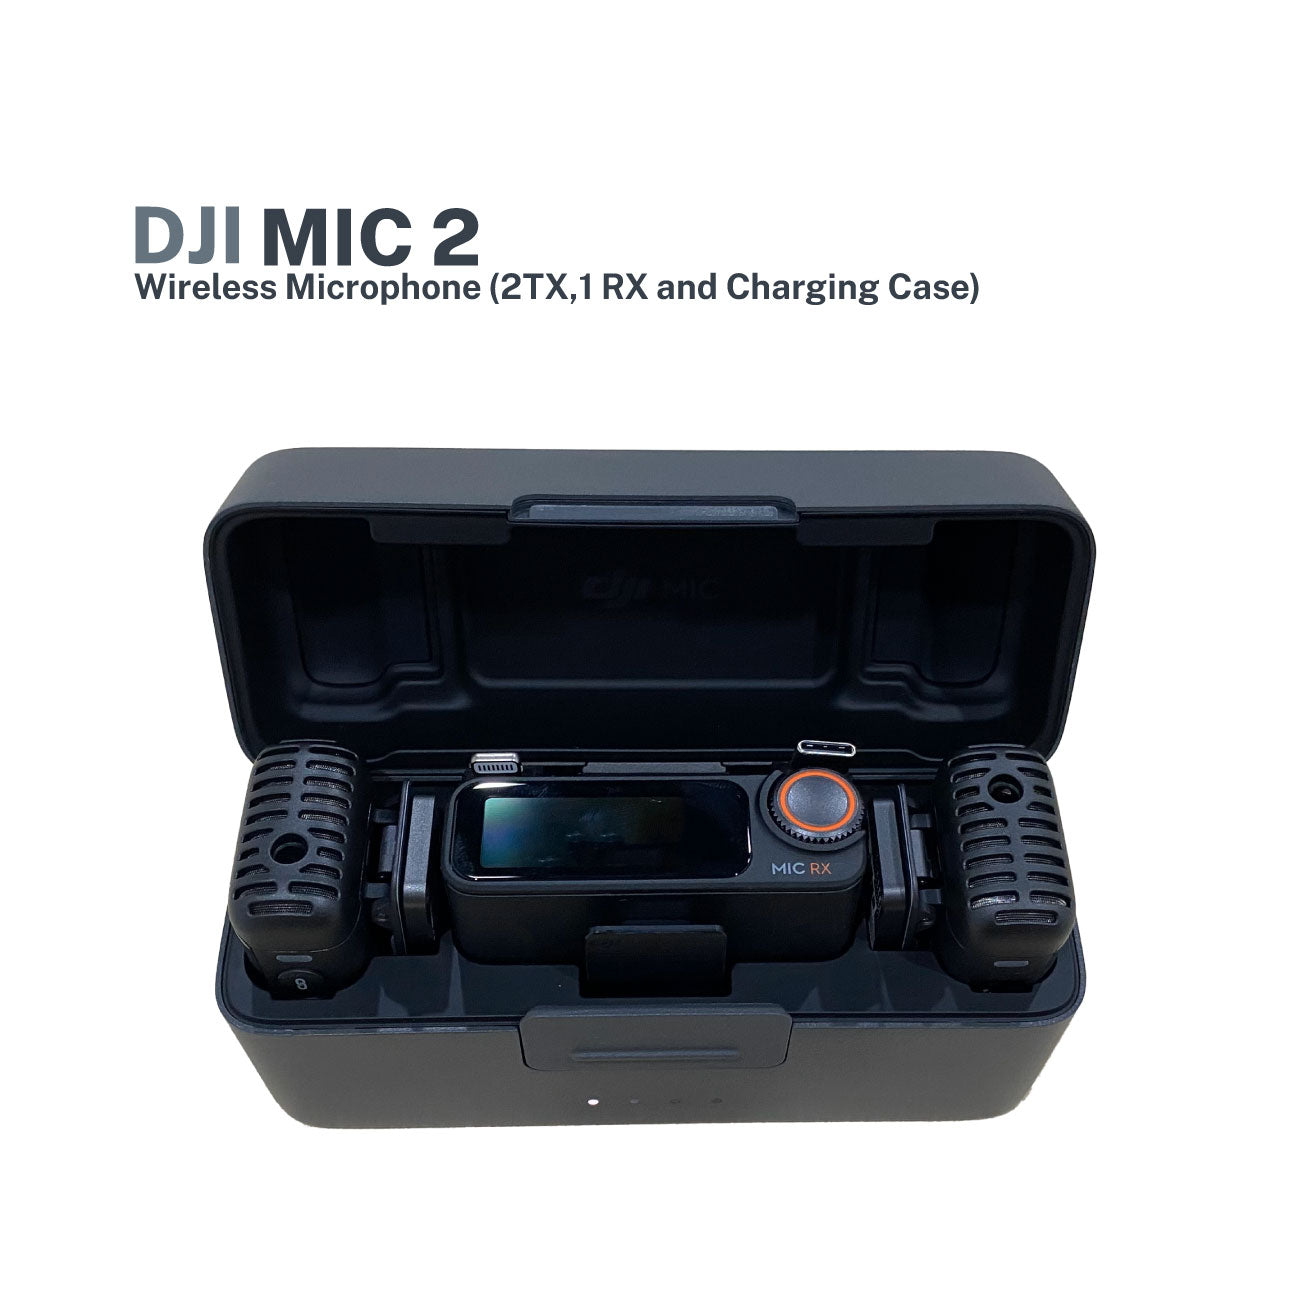 DJI MIC 2 (2 TX + 1 RX + CHARGING)